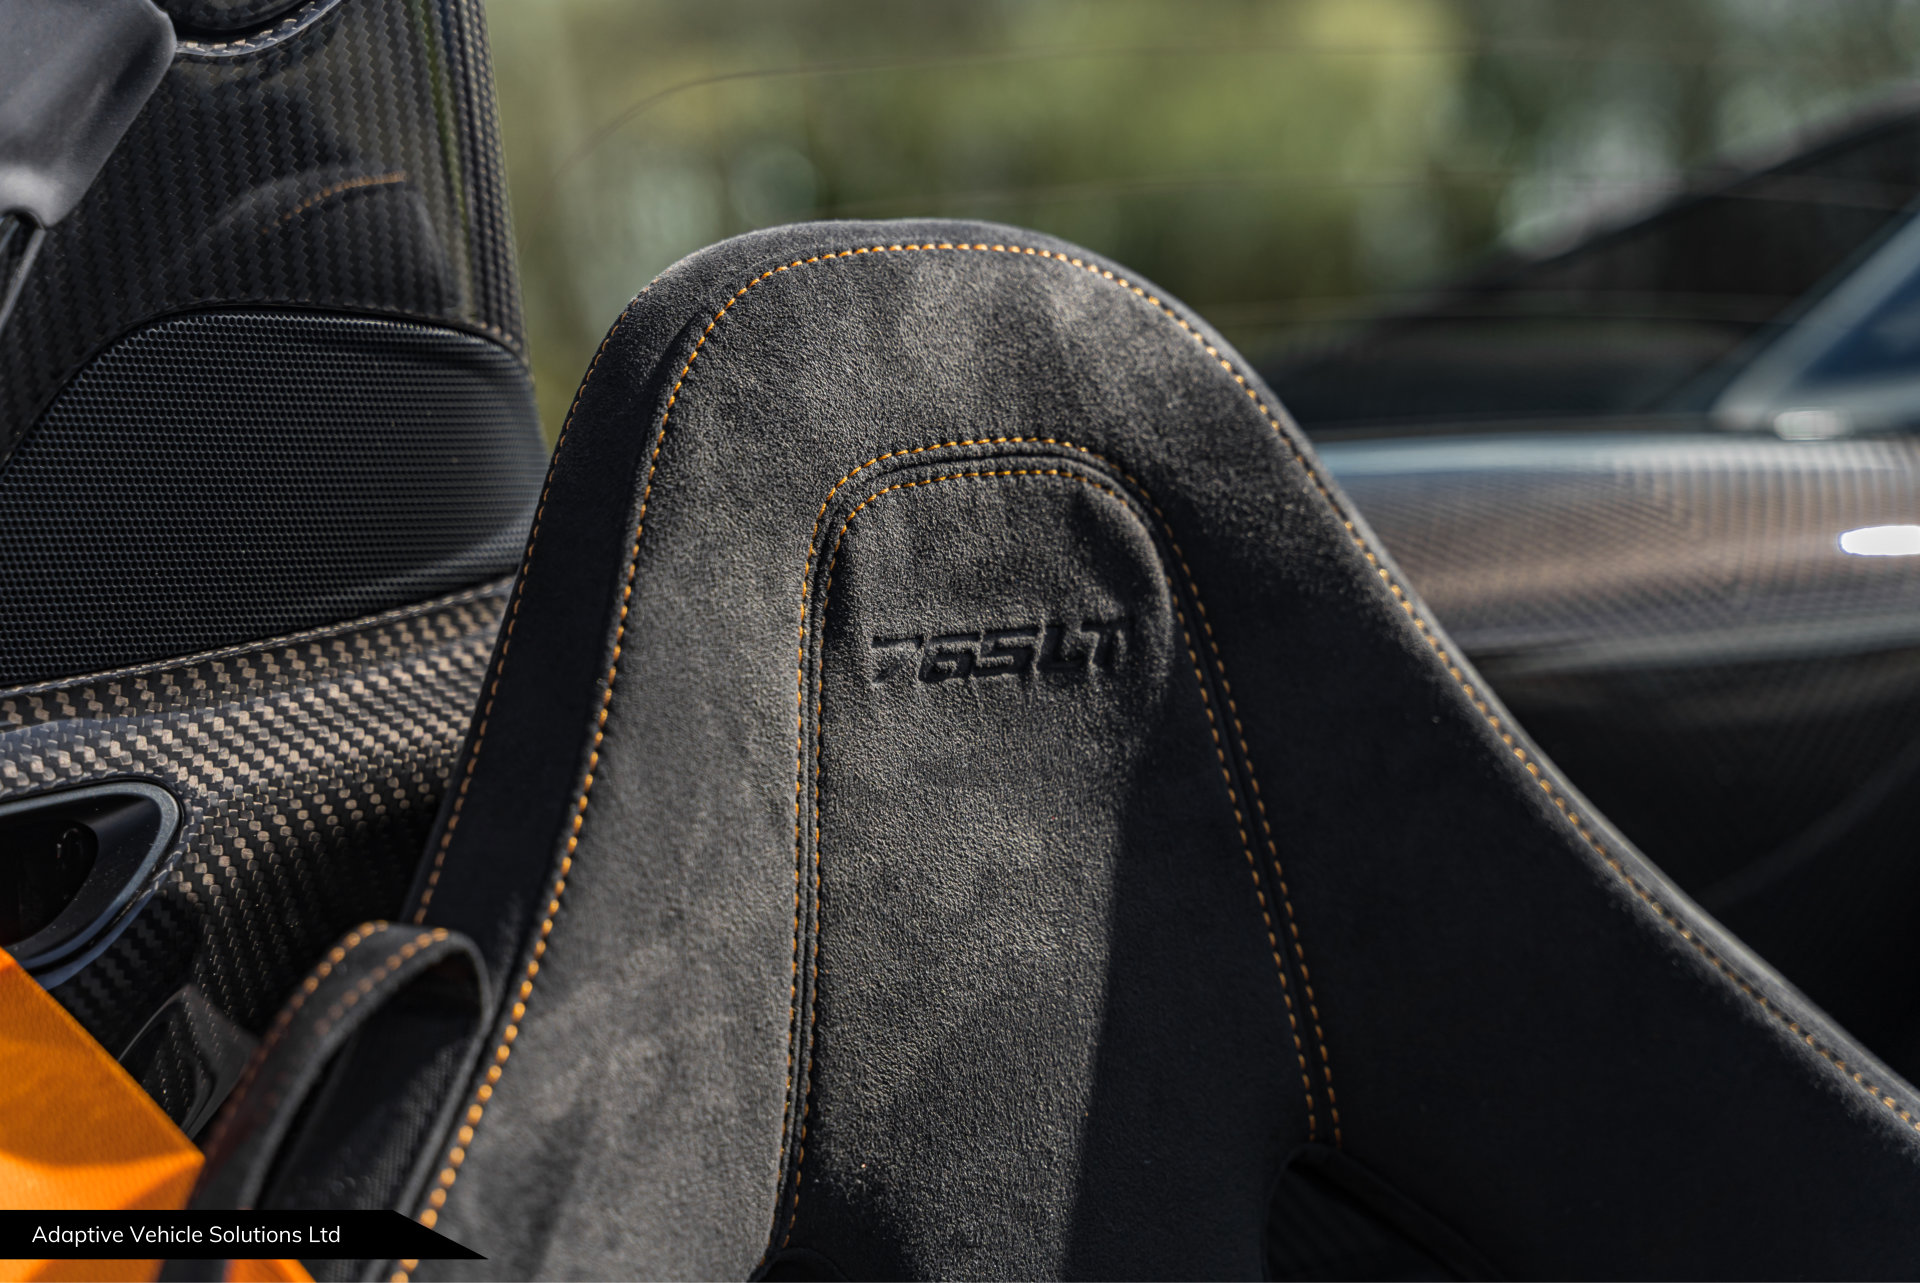 2022 McLaren 765LT Spider Sarthe Grey embossed headrest detailing